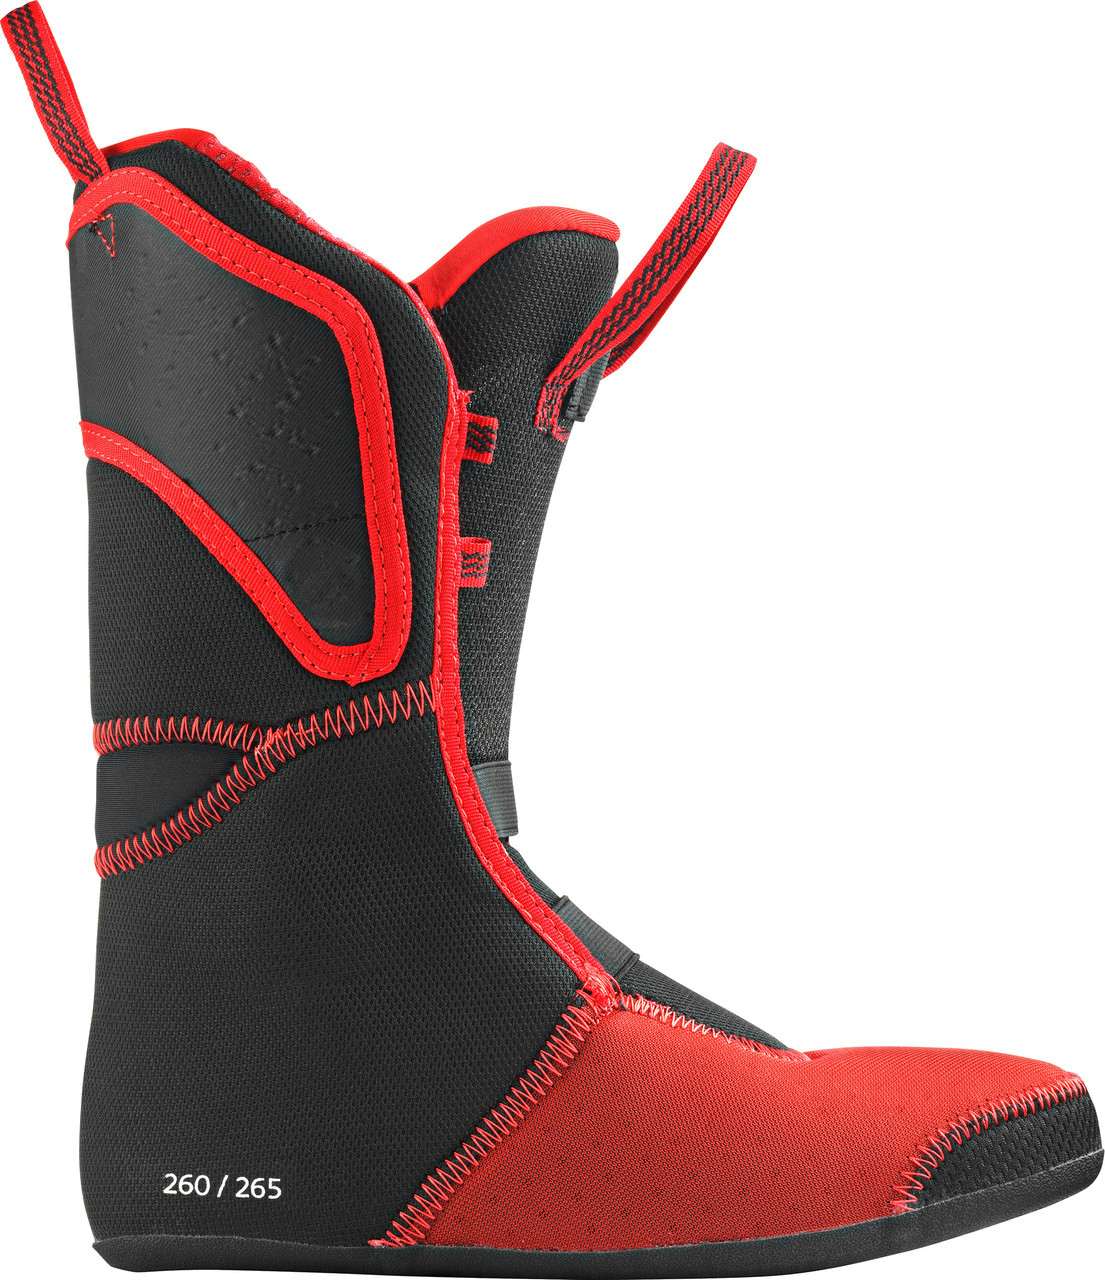 Backland Carbon 110 Ski Boots Black/Red